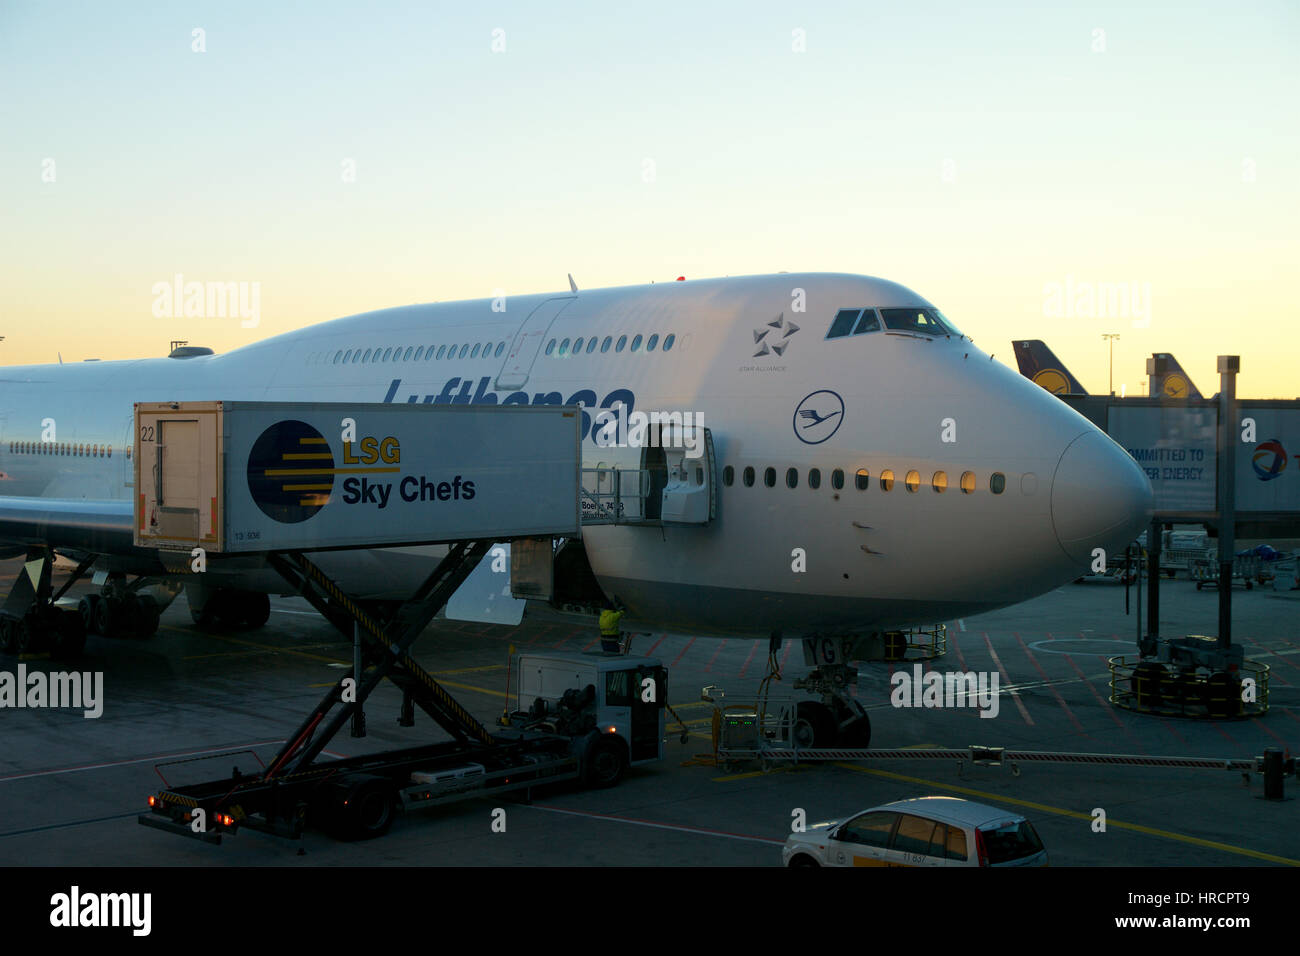 Francfort, Allemagne - JAN 20th, 2017 : Boeing 747-8 de Lufthansa stationné à la porte, prêt pour l'embarquement. Lufthansa est une compagnie aérienne allemande et aussi la plus grande compagnie aérienne en Europe Banque D'Images